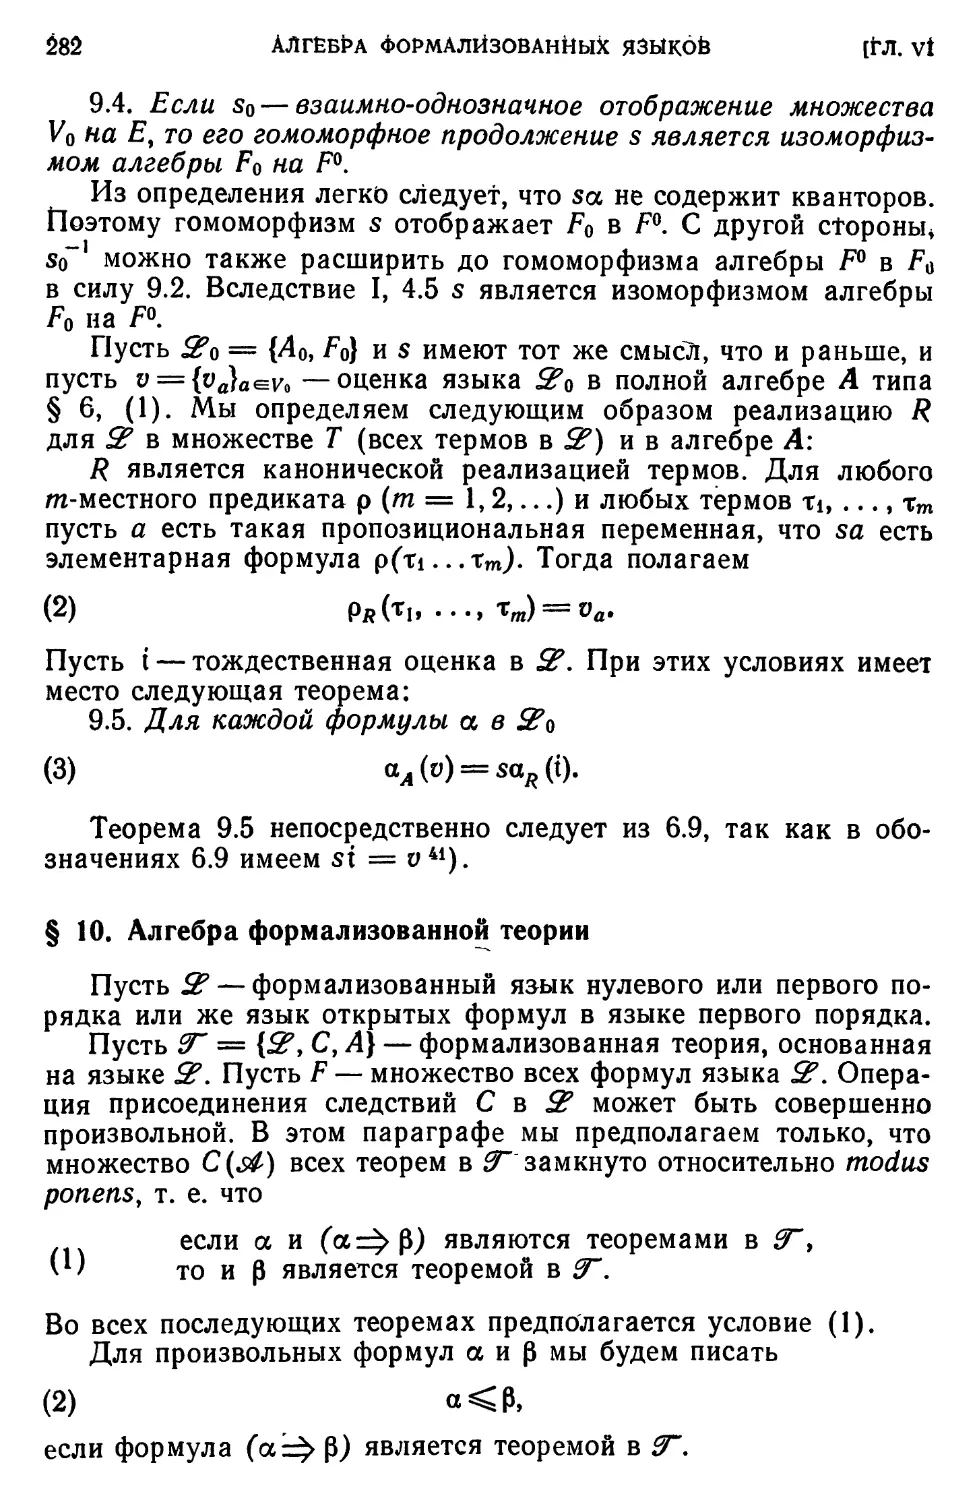 § 10. Алгебра формализованной теории